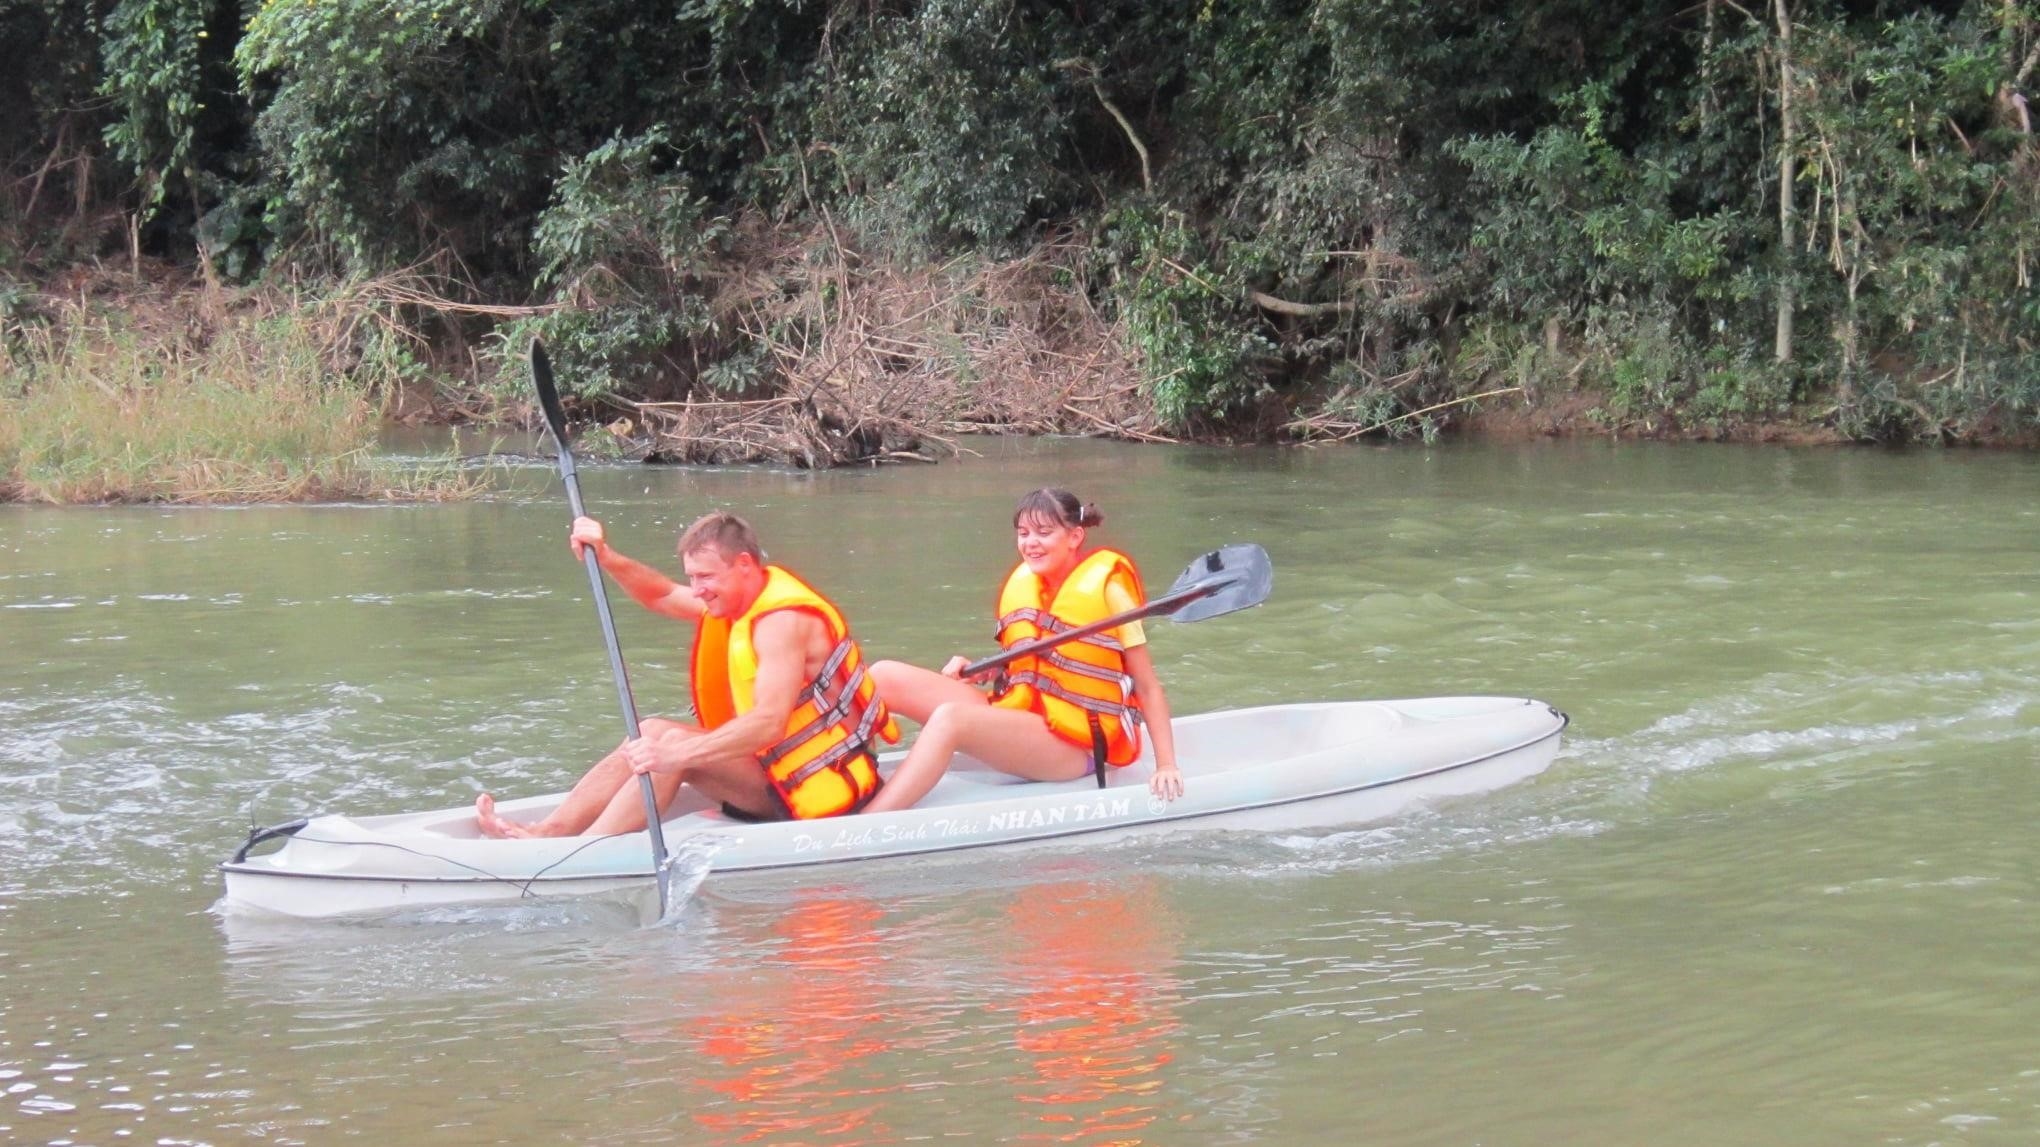 Chèo thuyền Kayak là một hoạt động thể thao ngoài trời được yêu thích, người tham gia sẽ có cơ hội khám phá thiên nhiên hoang dã và trải nghiệm cảm giác mạnh mẽ khi vượt qua những dòng sông và hồ thủy điện.